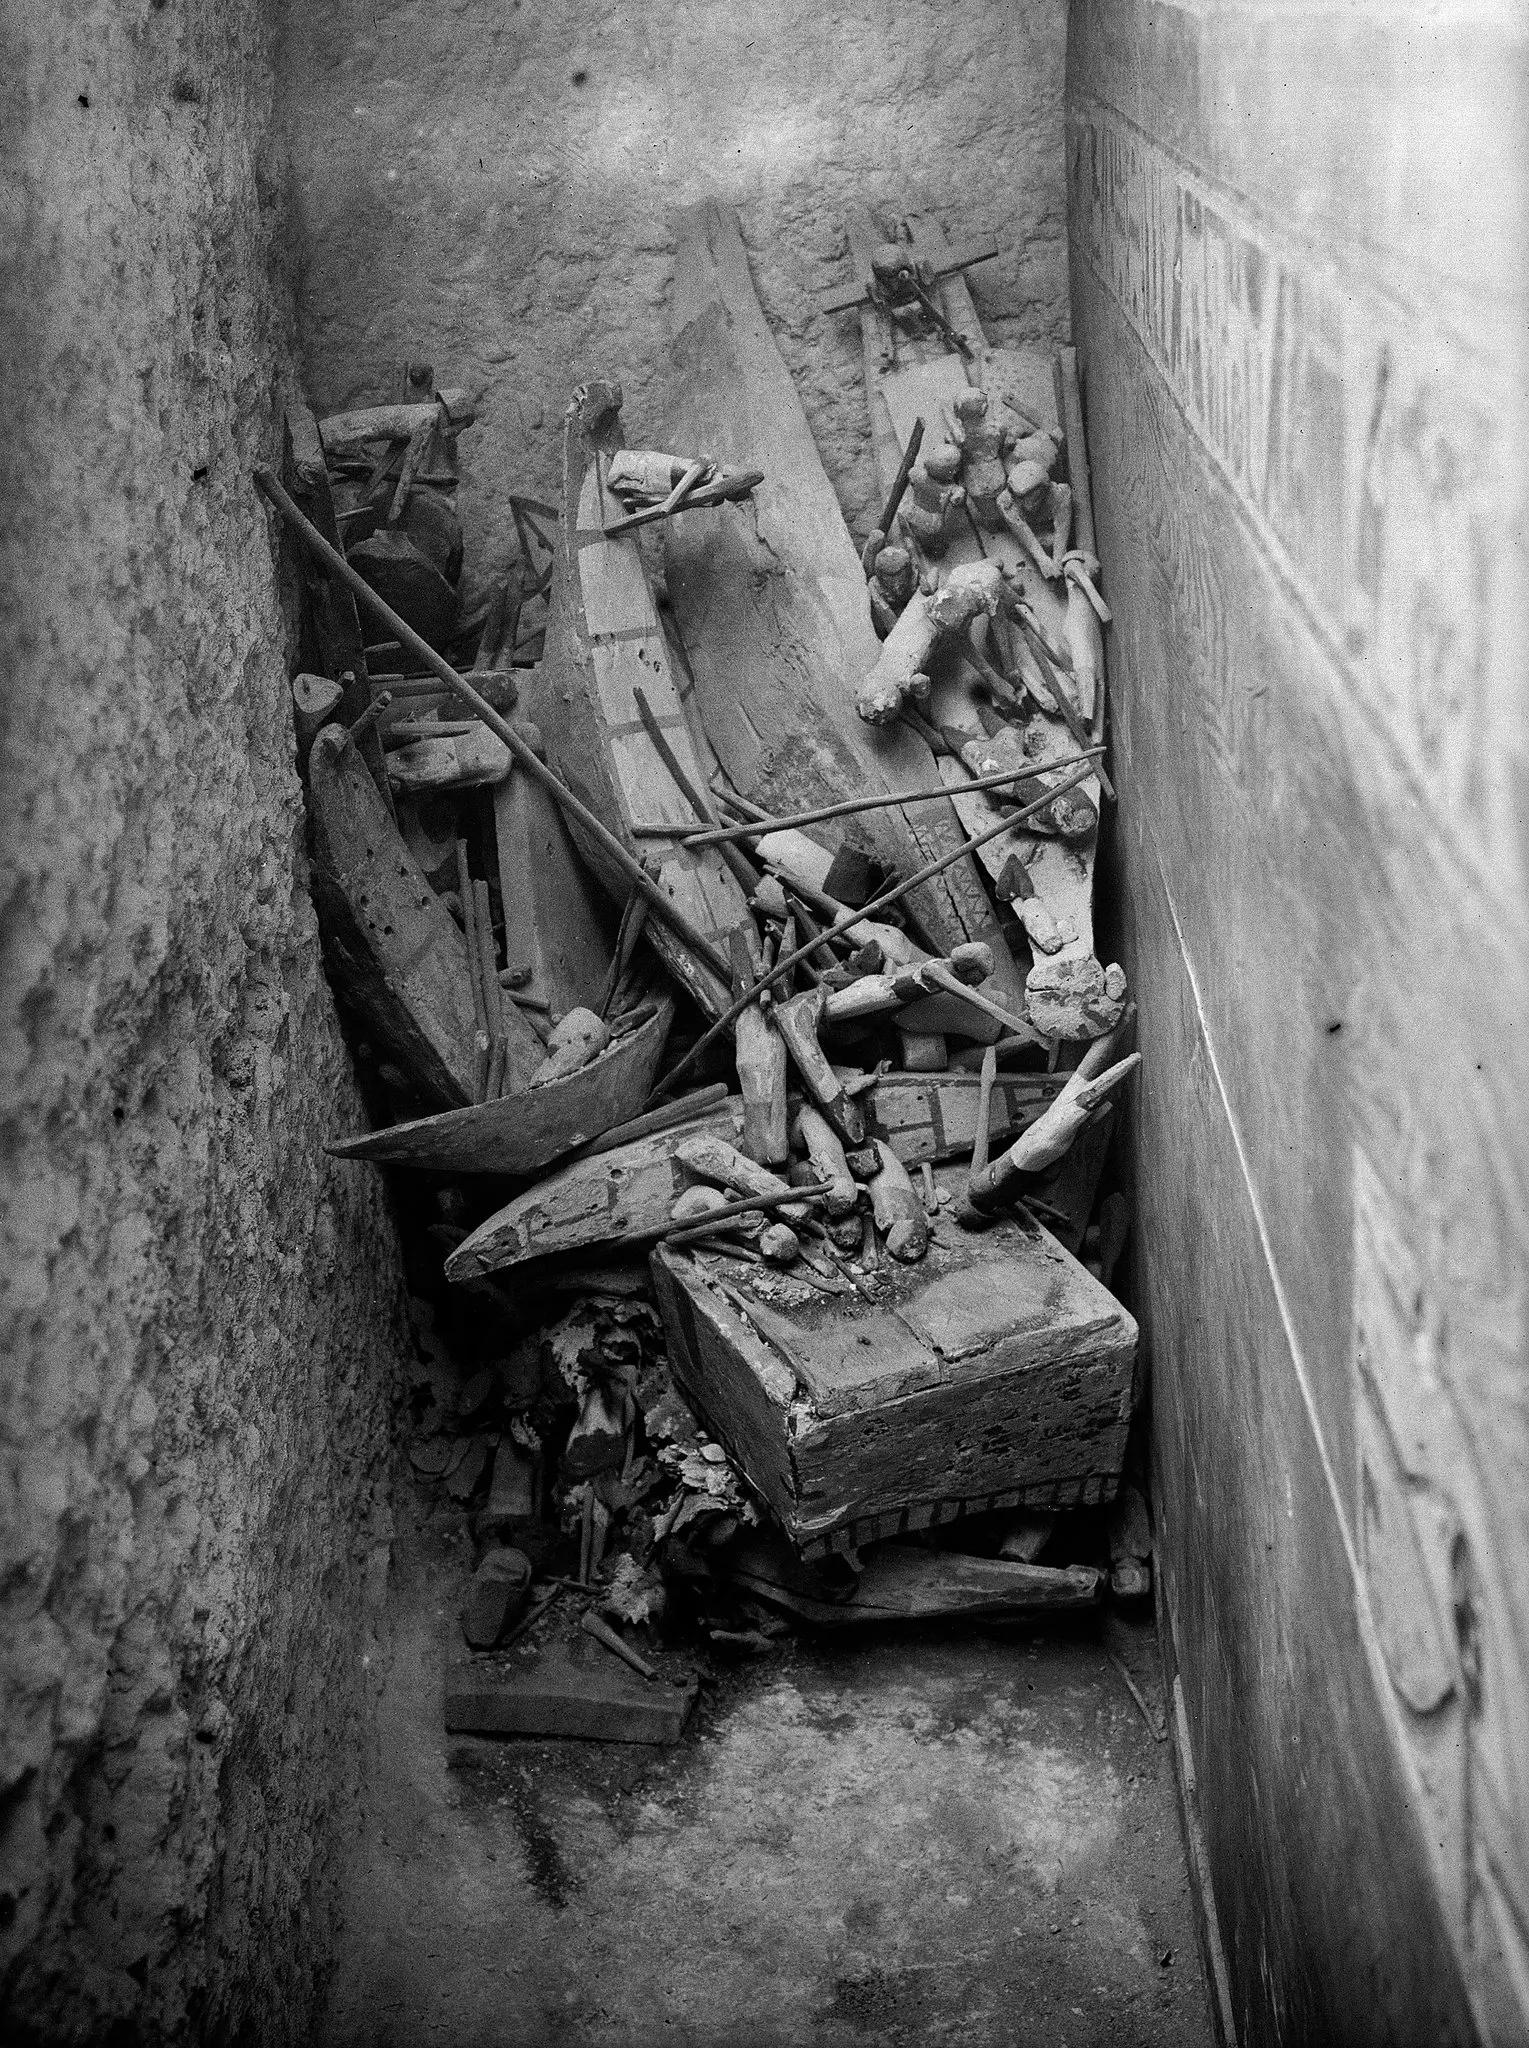 Investigação do FBI sobre a cabeça da múmia egípcia, Ciência forense desvenda identidade da múmia milenar, Desafios da análise de DNA em múmias antigas, Arqueologia e tecnologia no estudo de múmias egípcias, Cerimônia de Abertura da Boca na mumificação egípcia, Mistérios da necrópole de Deir el-Bersha, Arqueólogos americanos e a descoberta da tumba profanada, Técnicas de mumificação e práticas funerárias no Egito antigo, Exploração de múmias para entender o passado humano, Importância da tomografia computadorizada em estudos arqueológicos, Desvendando segredos dos restos mortais antigos, Evolução da ciência forense na análise de múmias, Dificuldades em preservar DNA em condições climáticas adversas, Técnicas modernas de análise óssea em arqueologia, Impacto da descoberta da identidade da múmia no mundo da arqueologia, Interdisciplinaridade entre medicina, arqueologia e história antiga, Contribuições do Museu de Belas Artes de Boston para a pesquisa arqueológica, Relevância da cooperação entre instituições científicas em estudos arqueológicos, Desafios éticos em estudos científicos de restos humanos antigos, Narrativa histórica revelada pela análise de múmias e artefatos funerários.